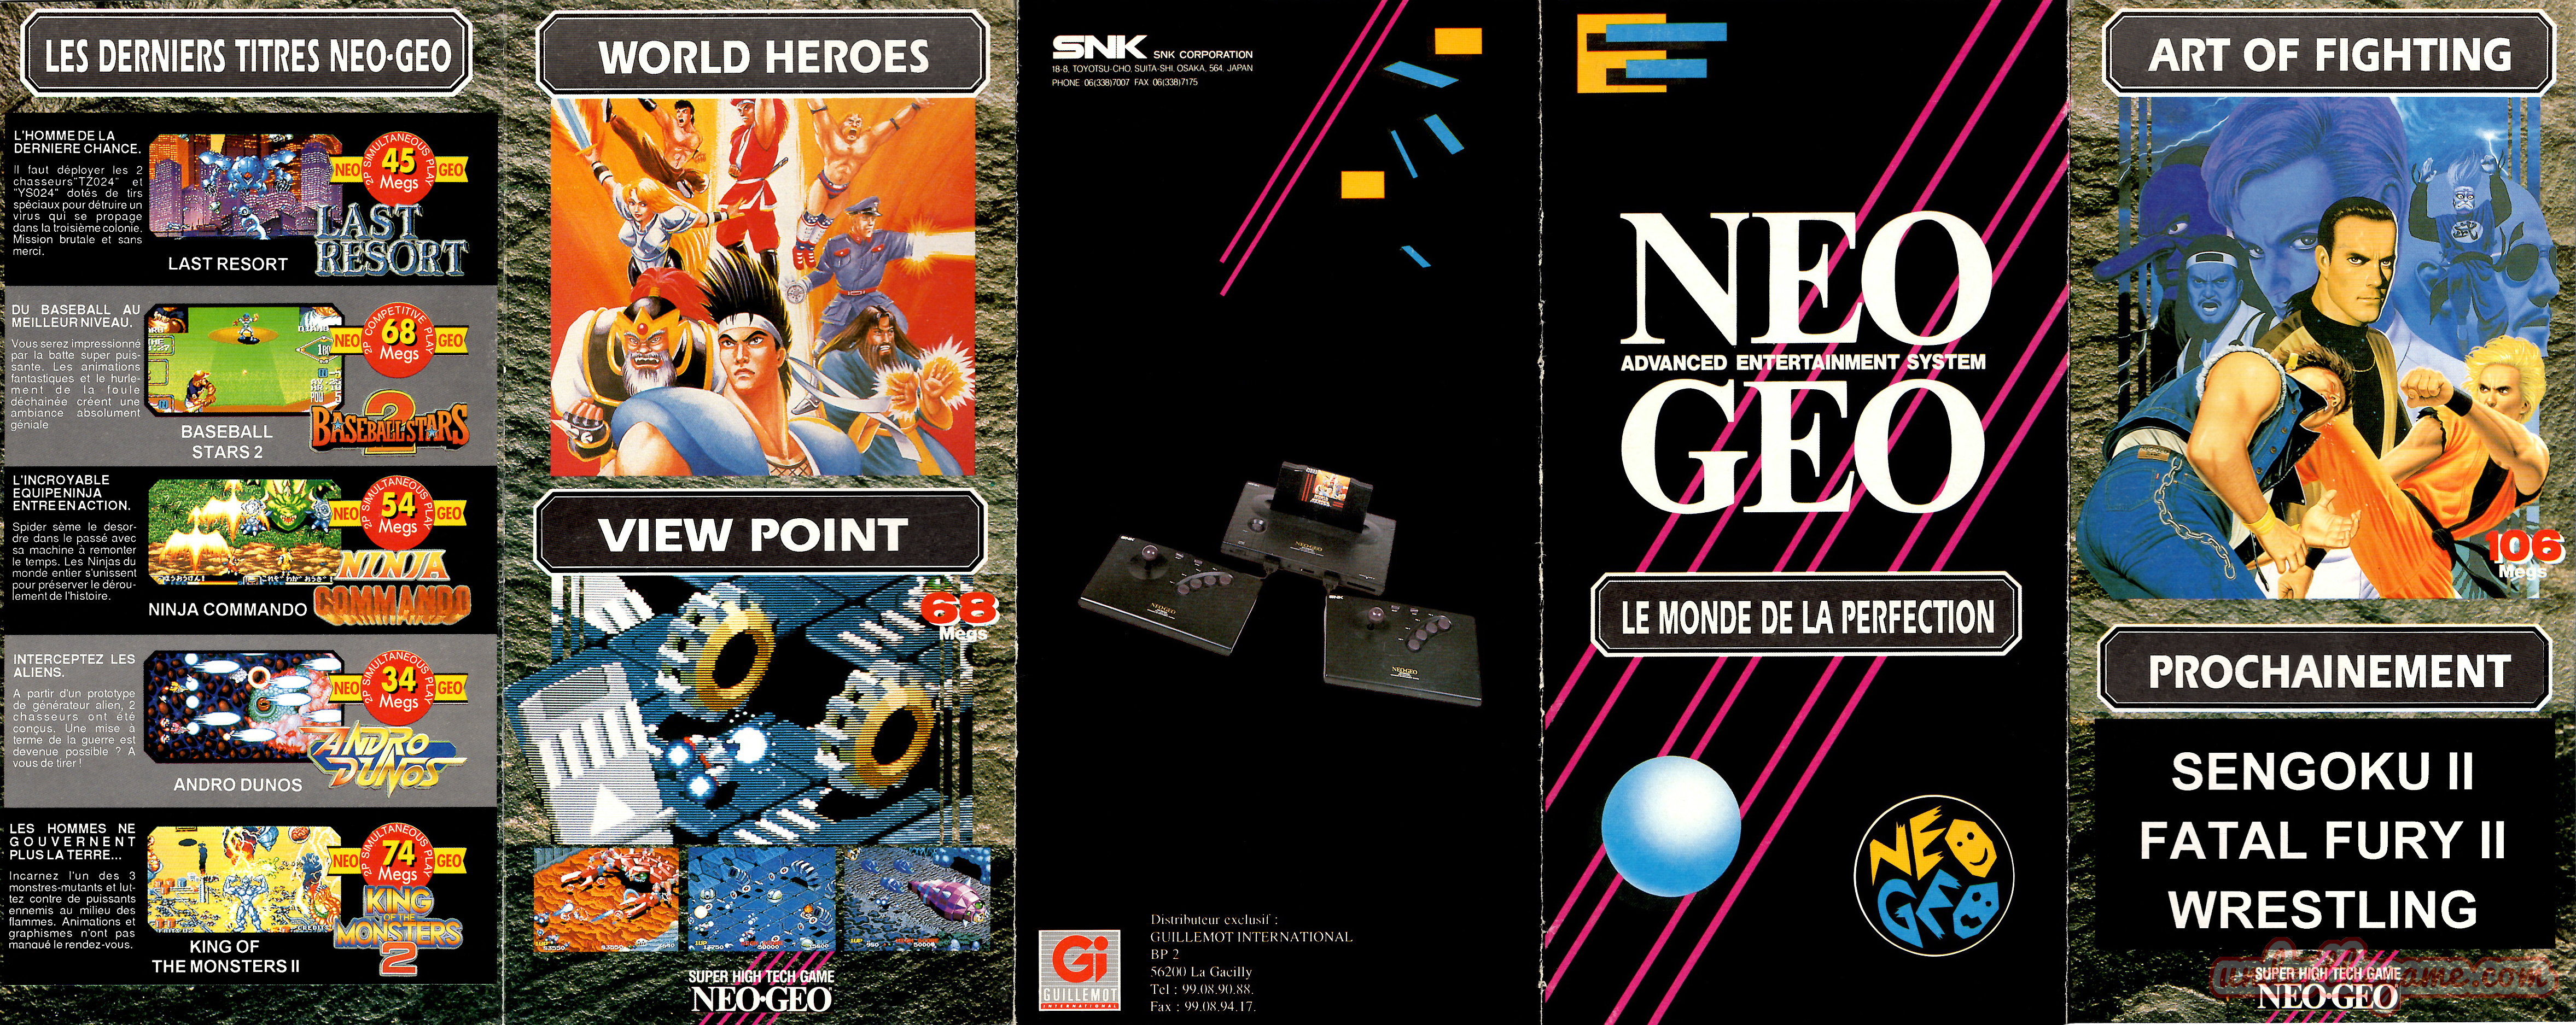 presse - Neo Geo dans la presse (ancien post) - Page 3 Depliant-snk-neo-geo-le-monde-de-la-perfection-1992-recto